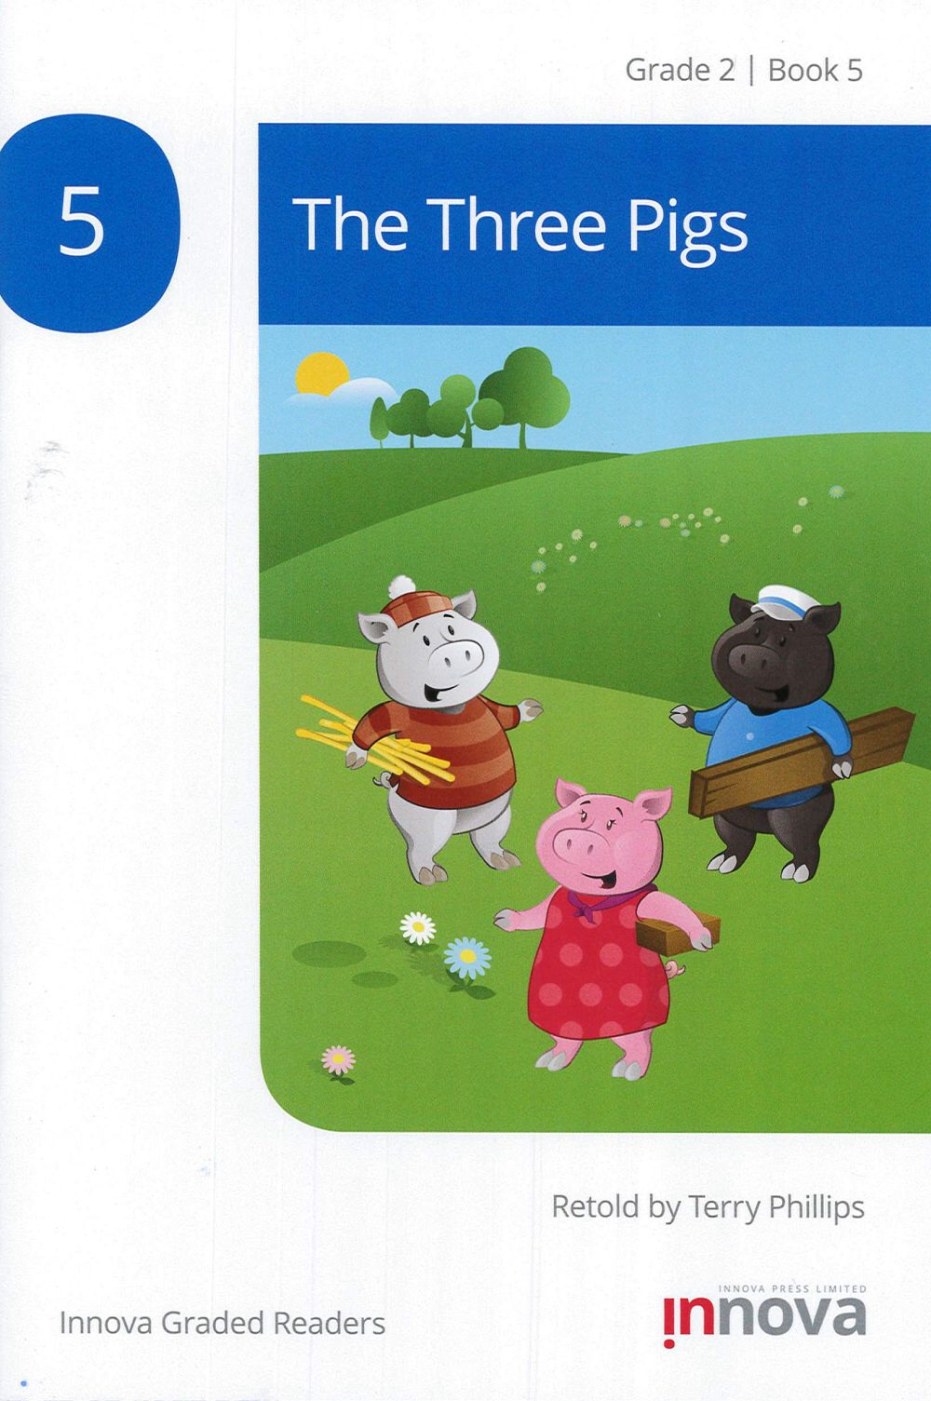 Innova Graded Readers Grade 2 (Book 5): The Three Pigs